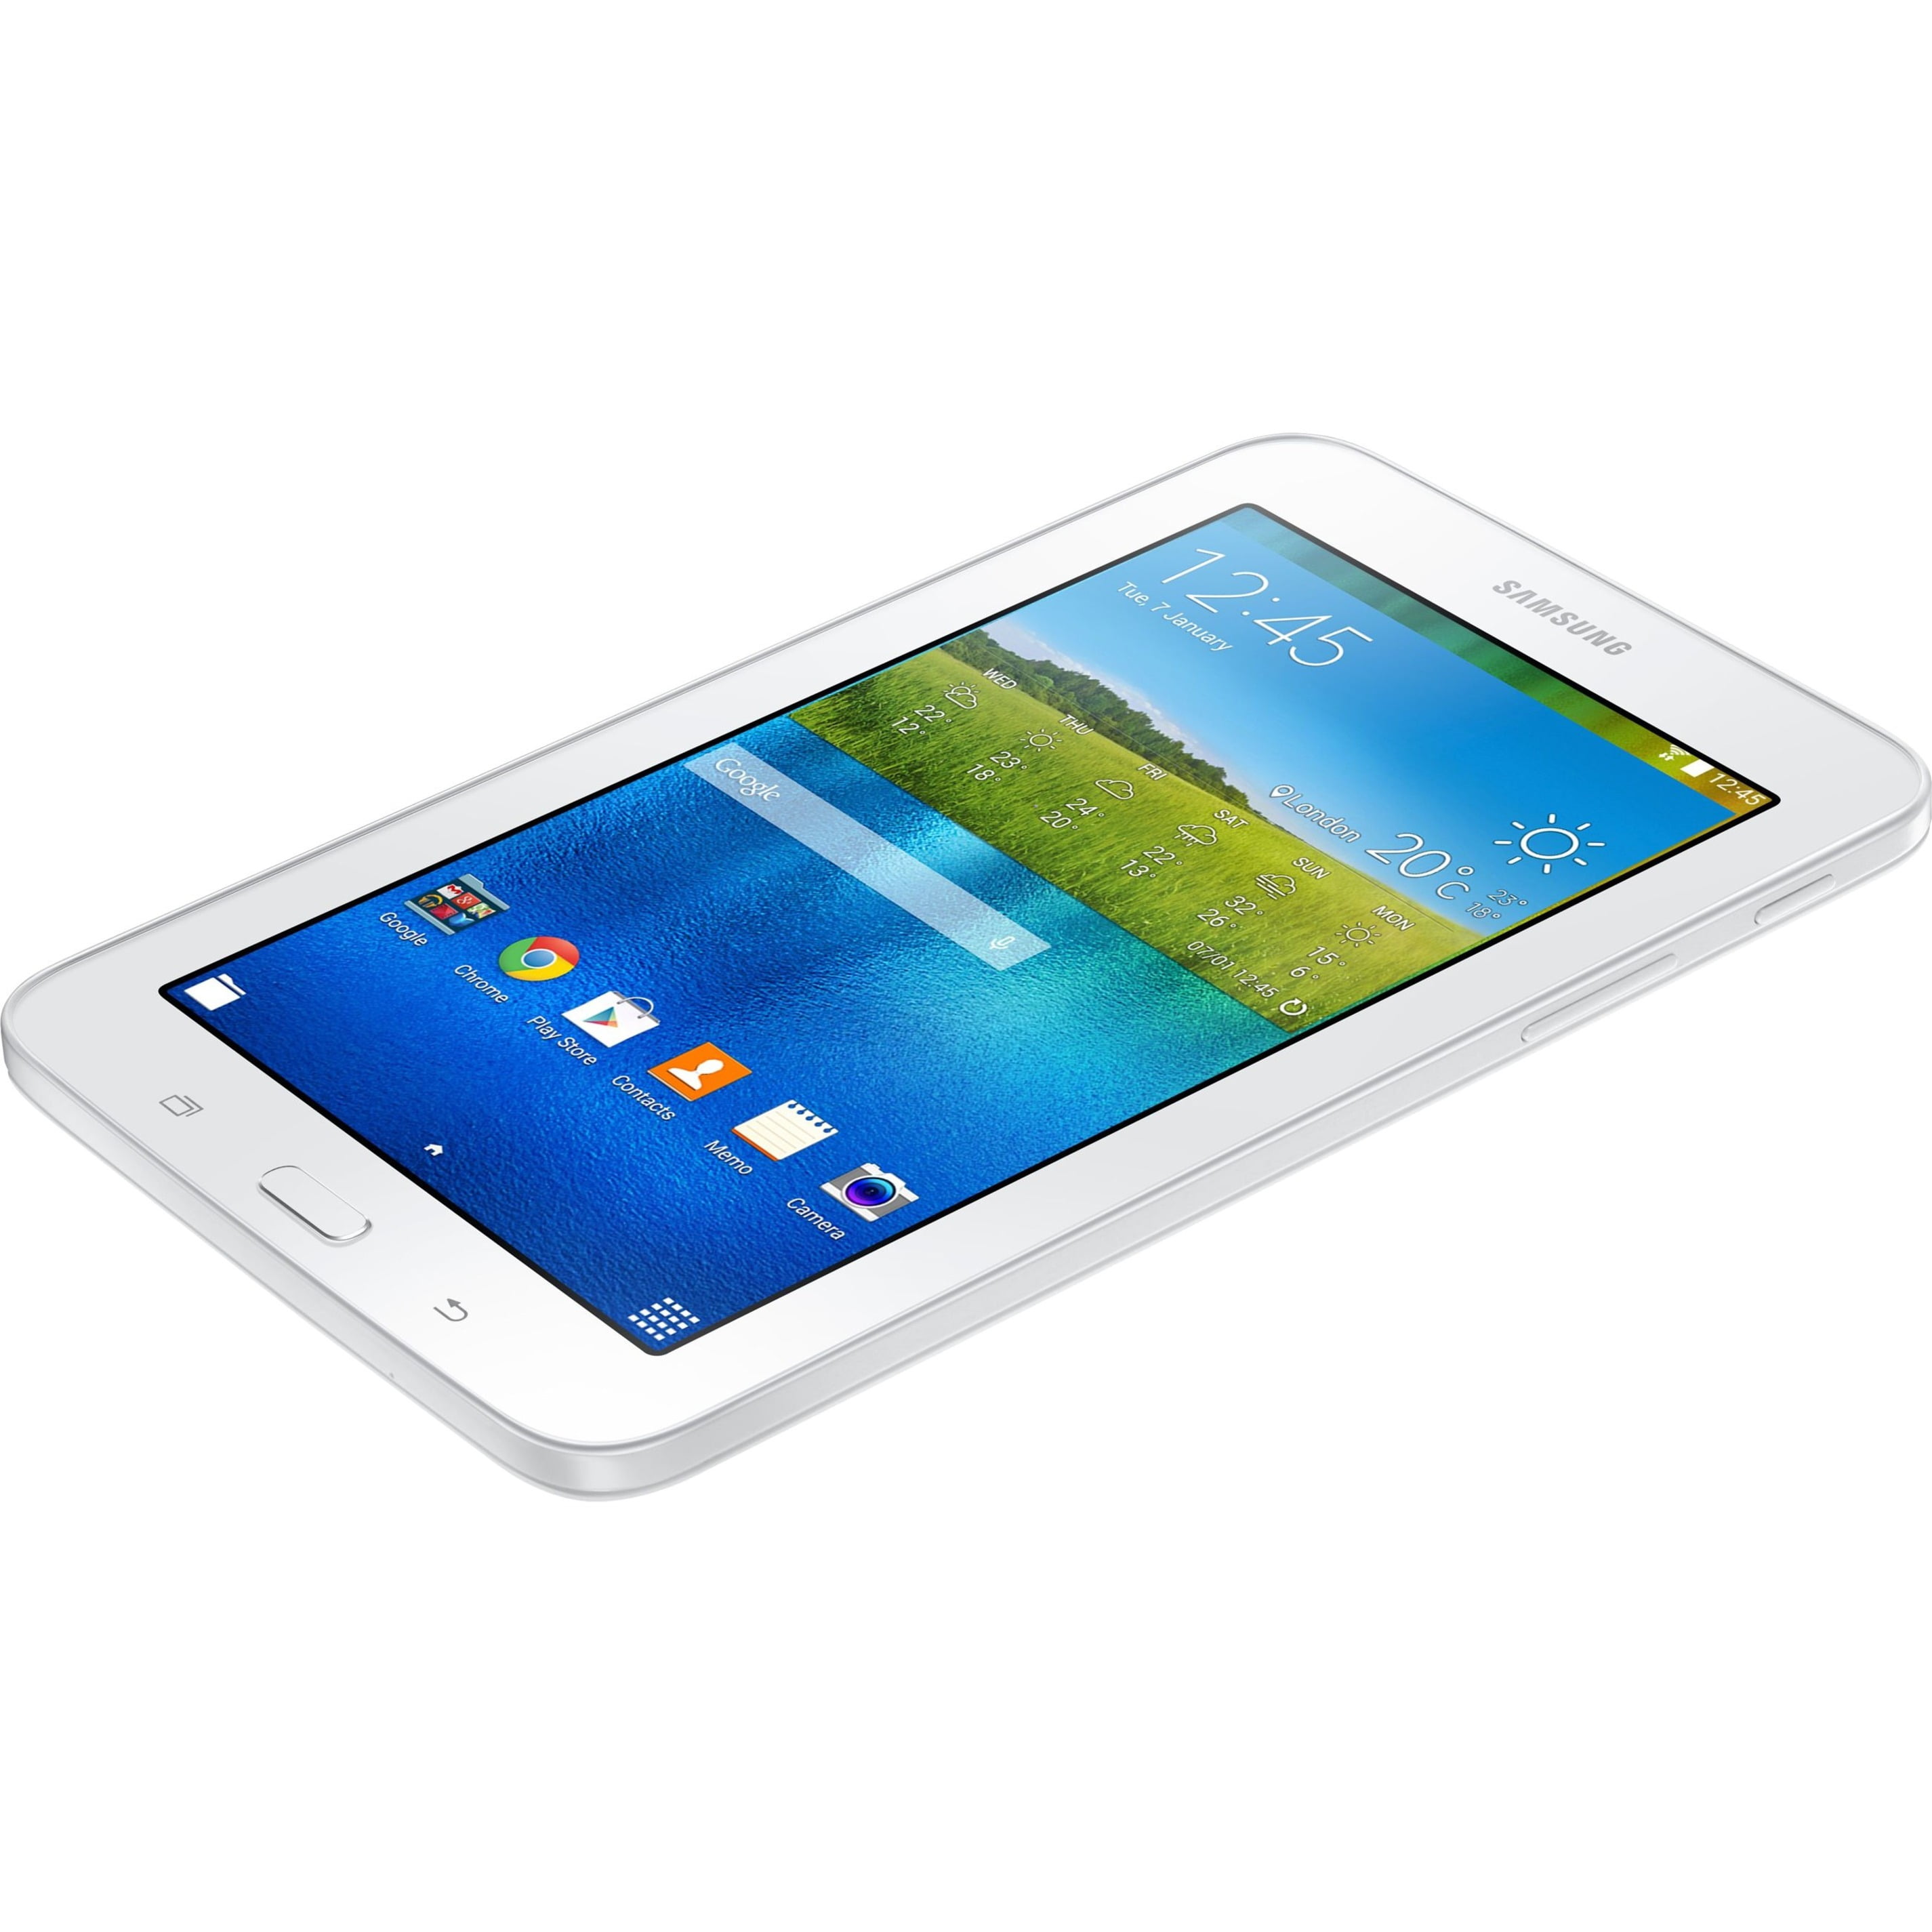 bijvoorbeeld Precies Collectief Refurbished Samsung Galaxy Tab E Lite 7.0" 8GB White Wi-Fi SM-T113NDWAXAR -  Walmart.com